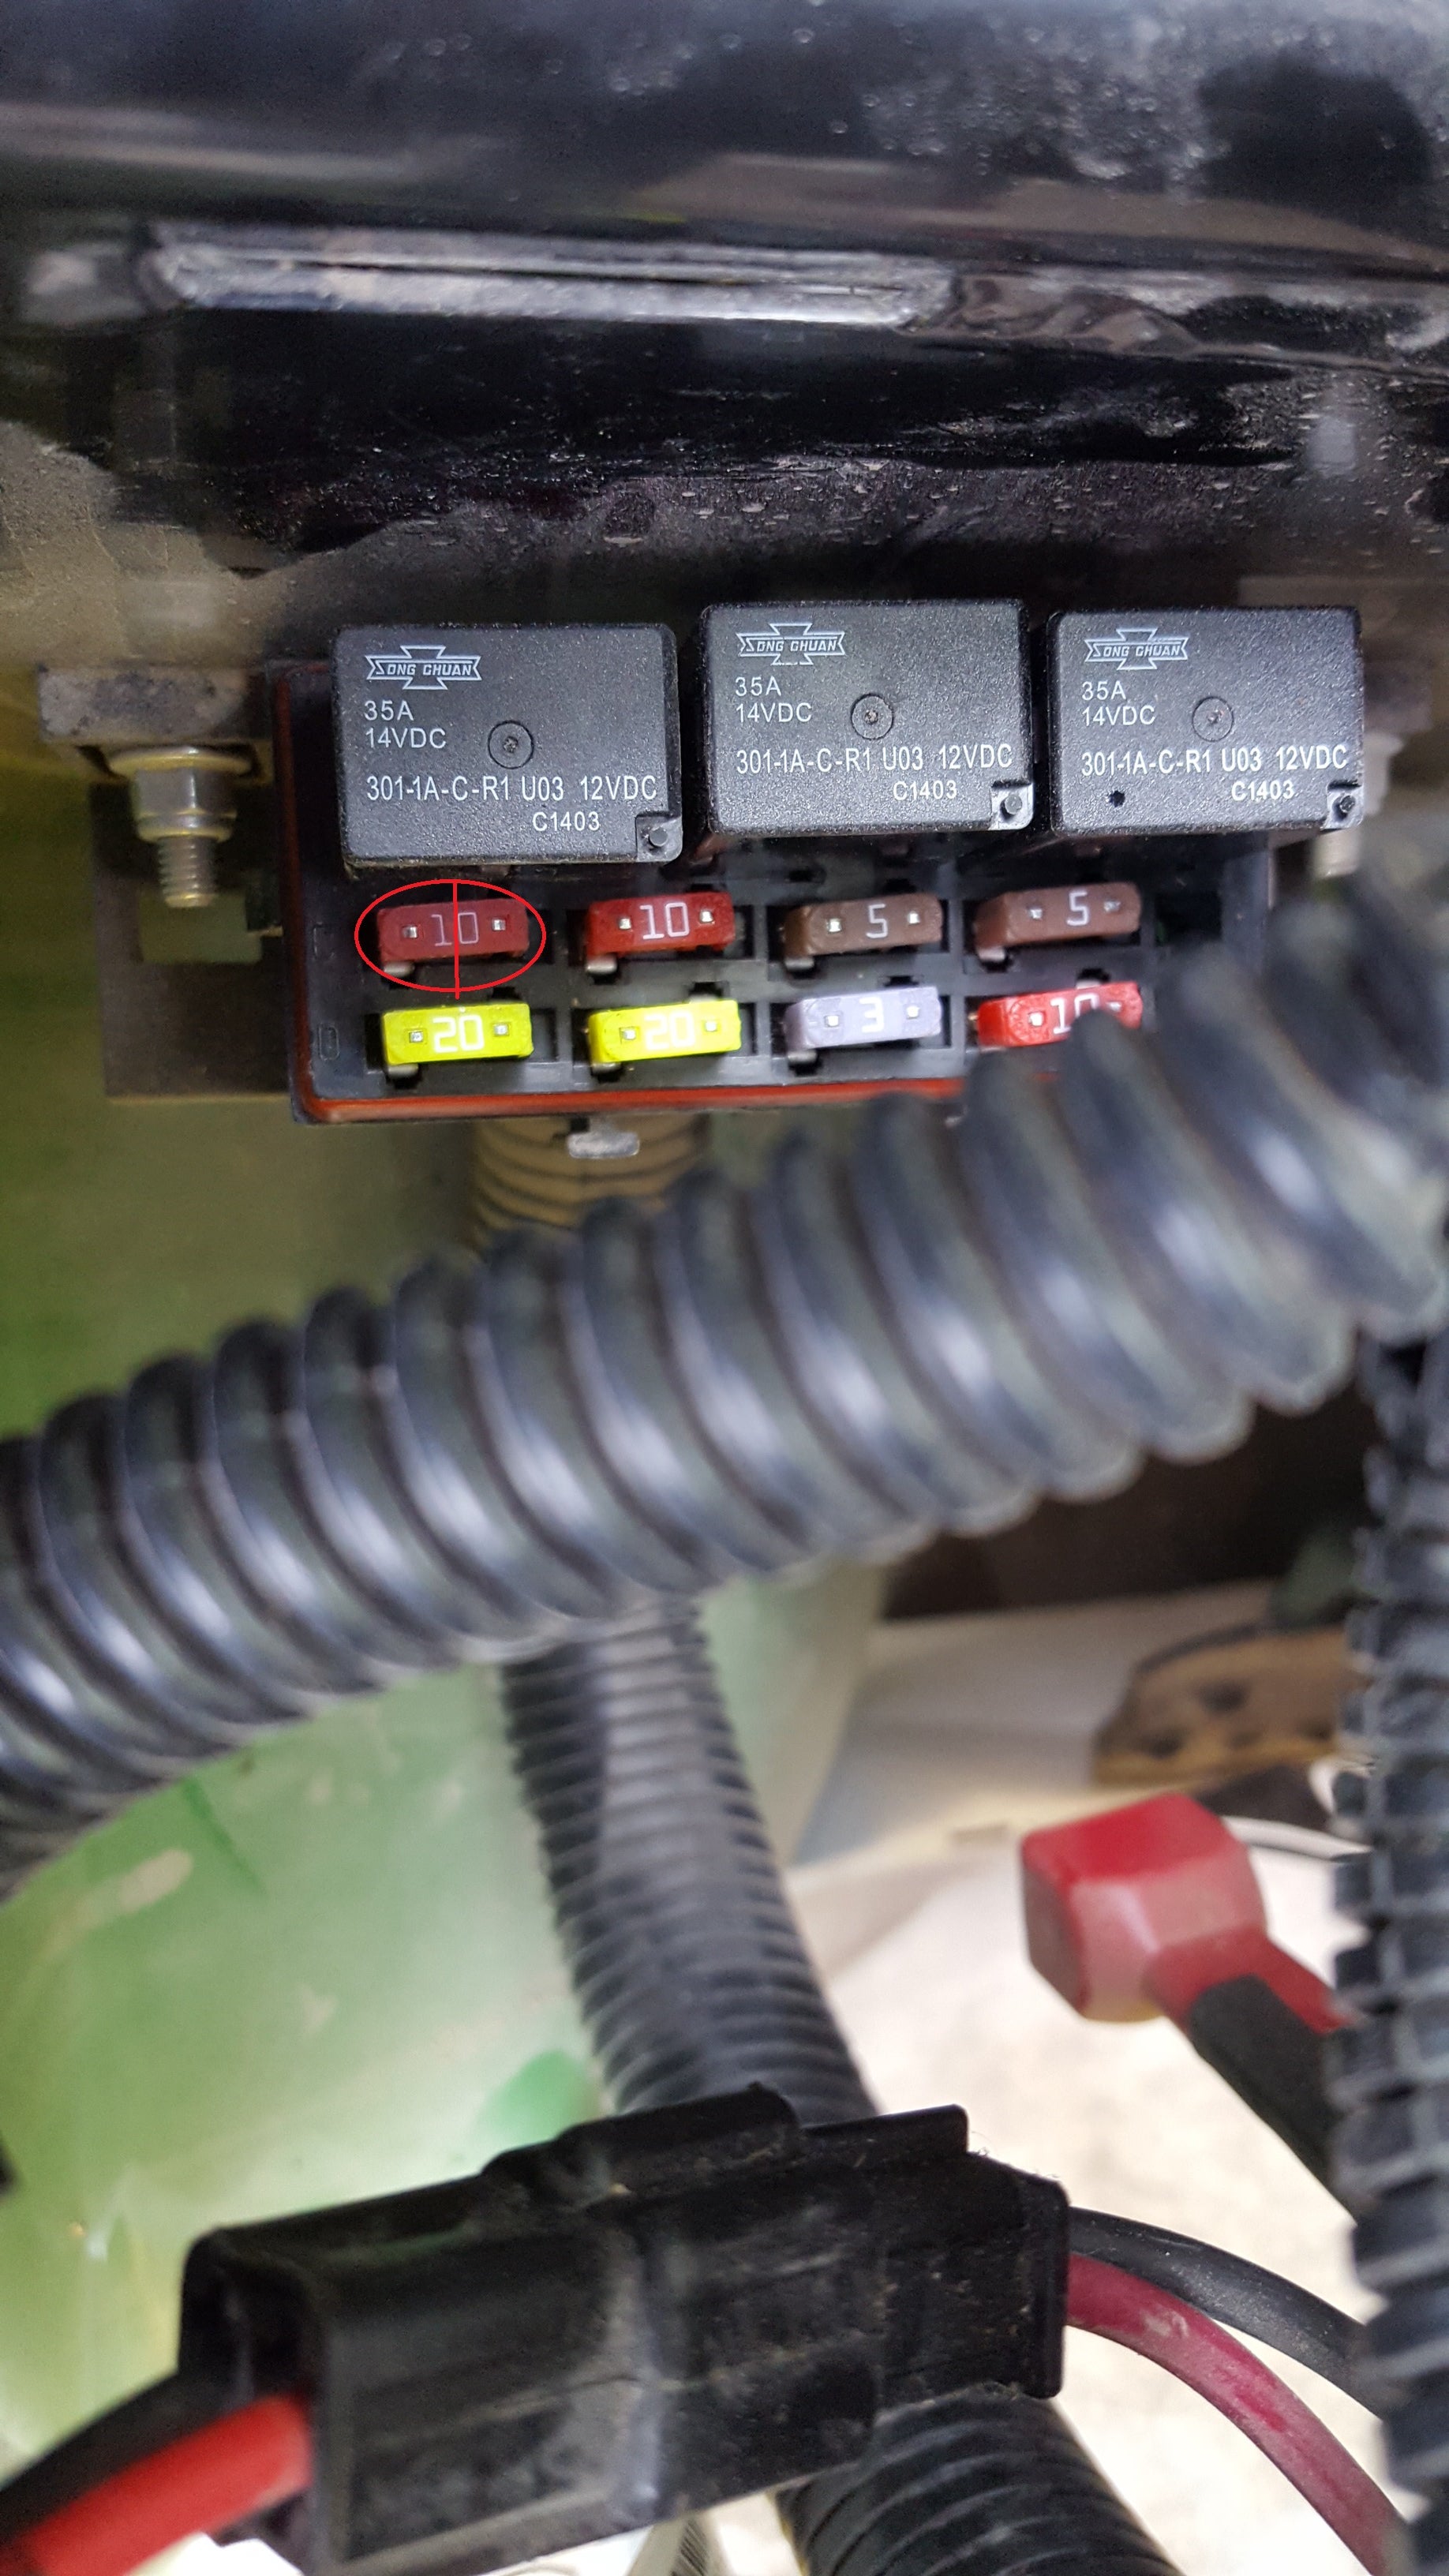 2015 825i Fuel pump fuse blowing